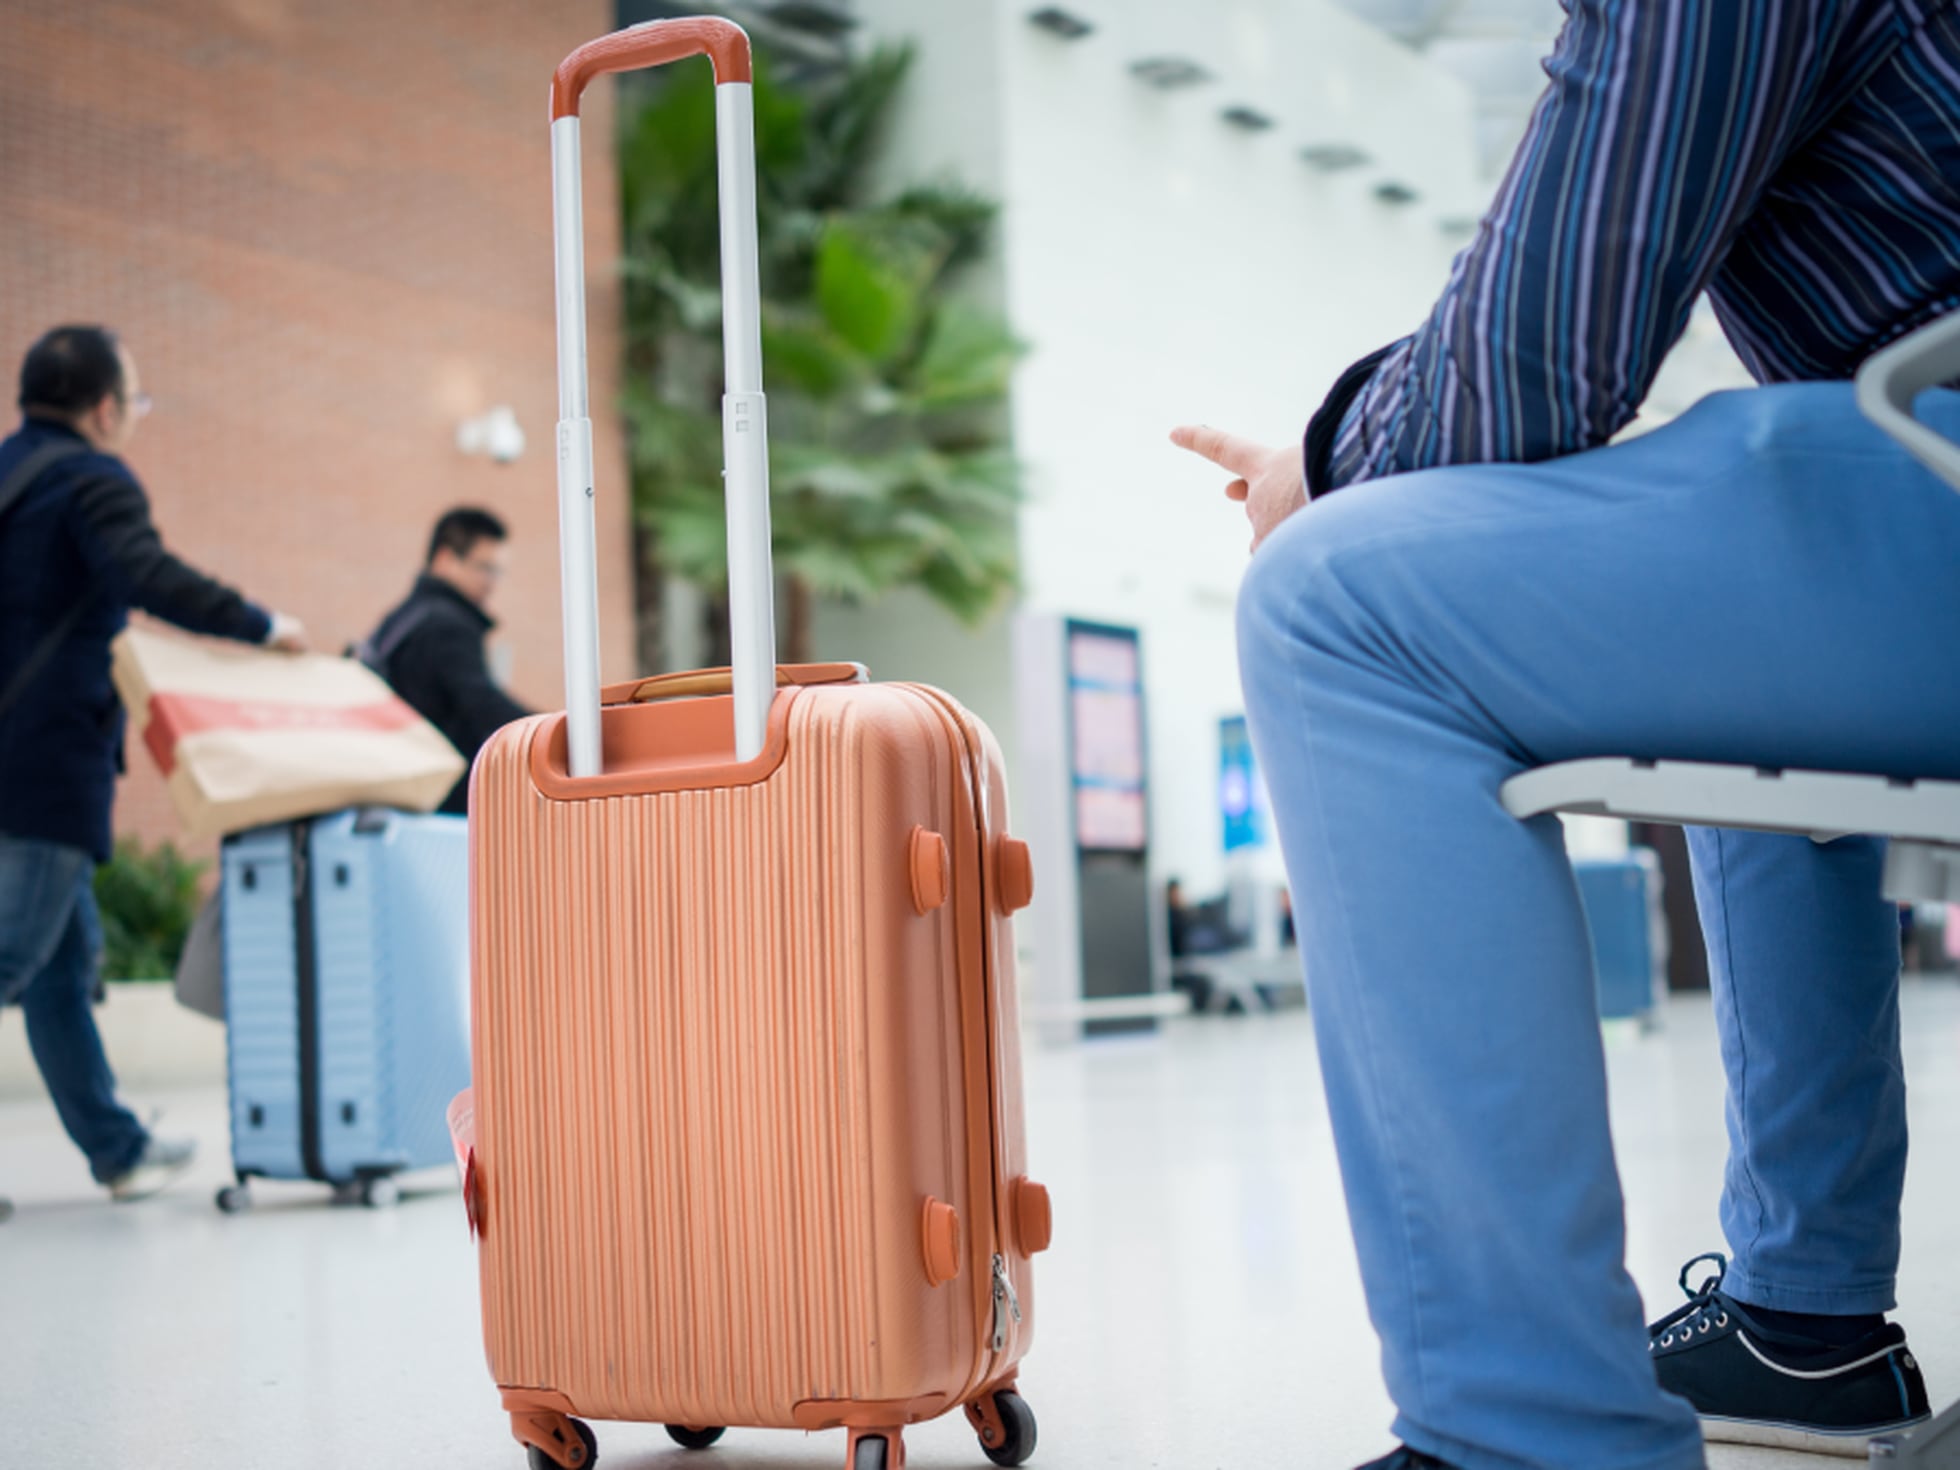 Diez maletas de viaje baratas o con descuento para distintas necesidades: de cabina, o tipo mochila | Escaparate: compras ofertas | EL PAÍS